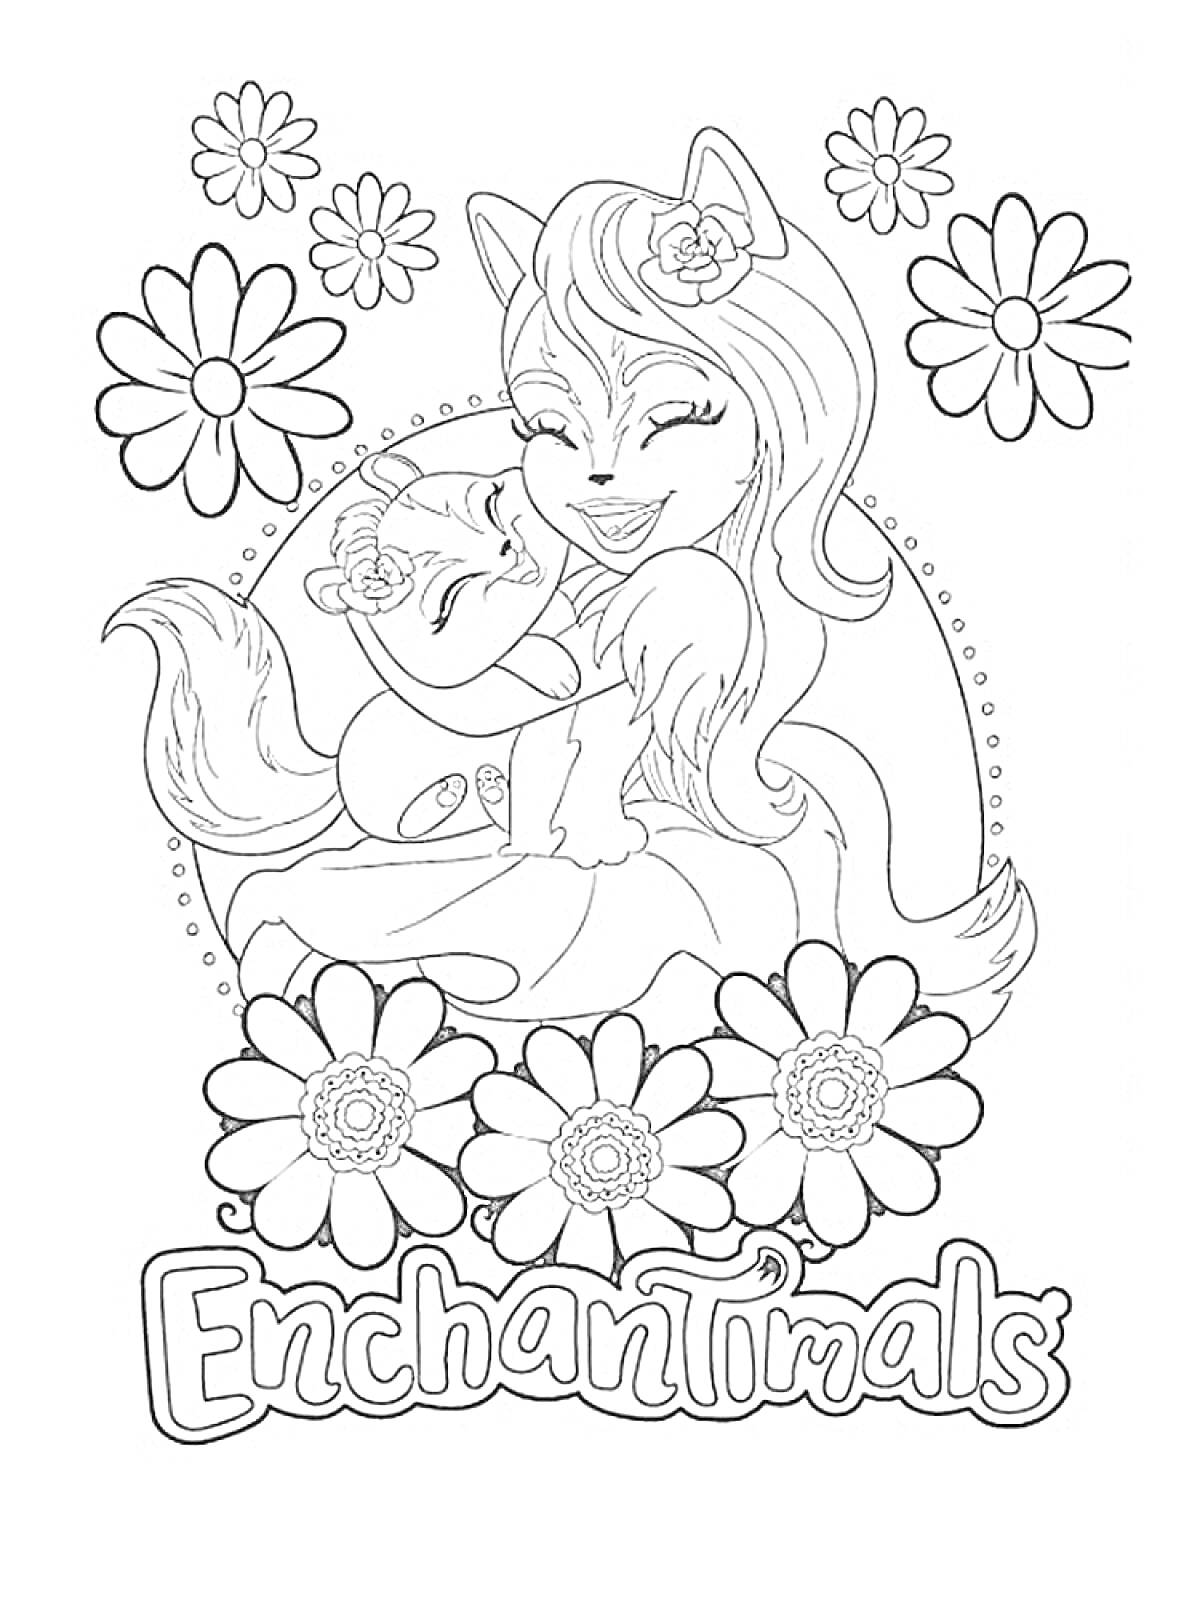 Раскраска Энчантималс с Лисицей, цветами и улыбкой